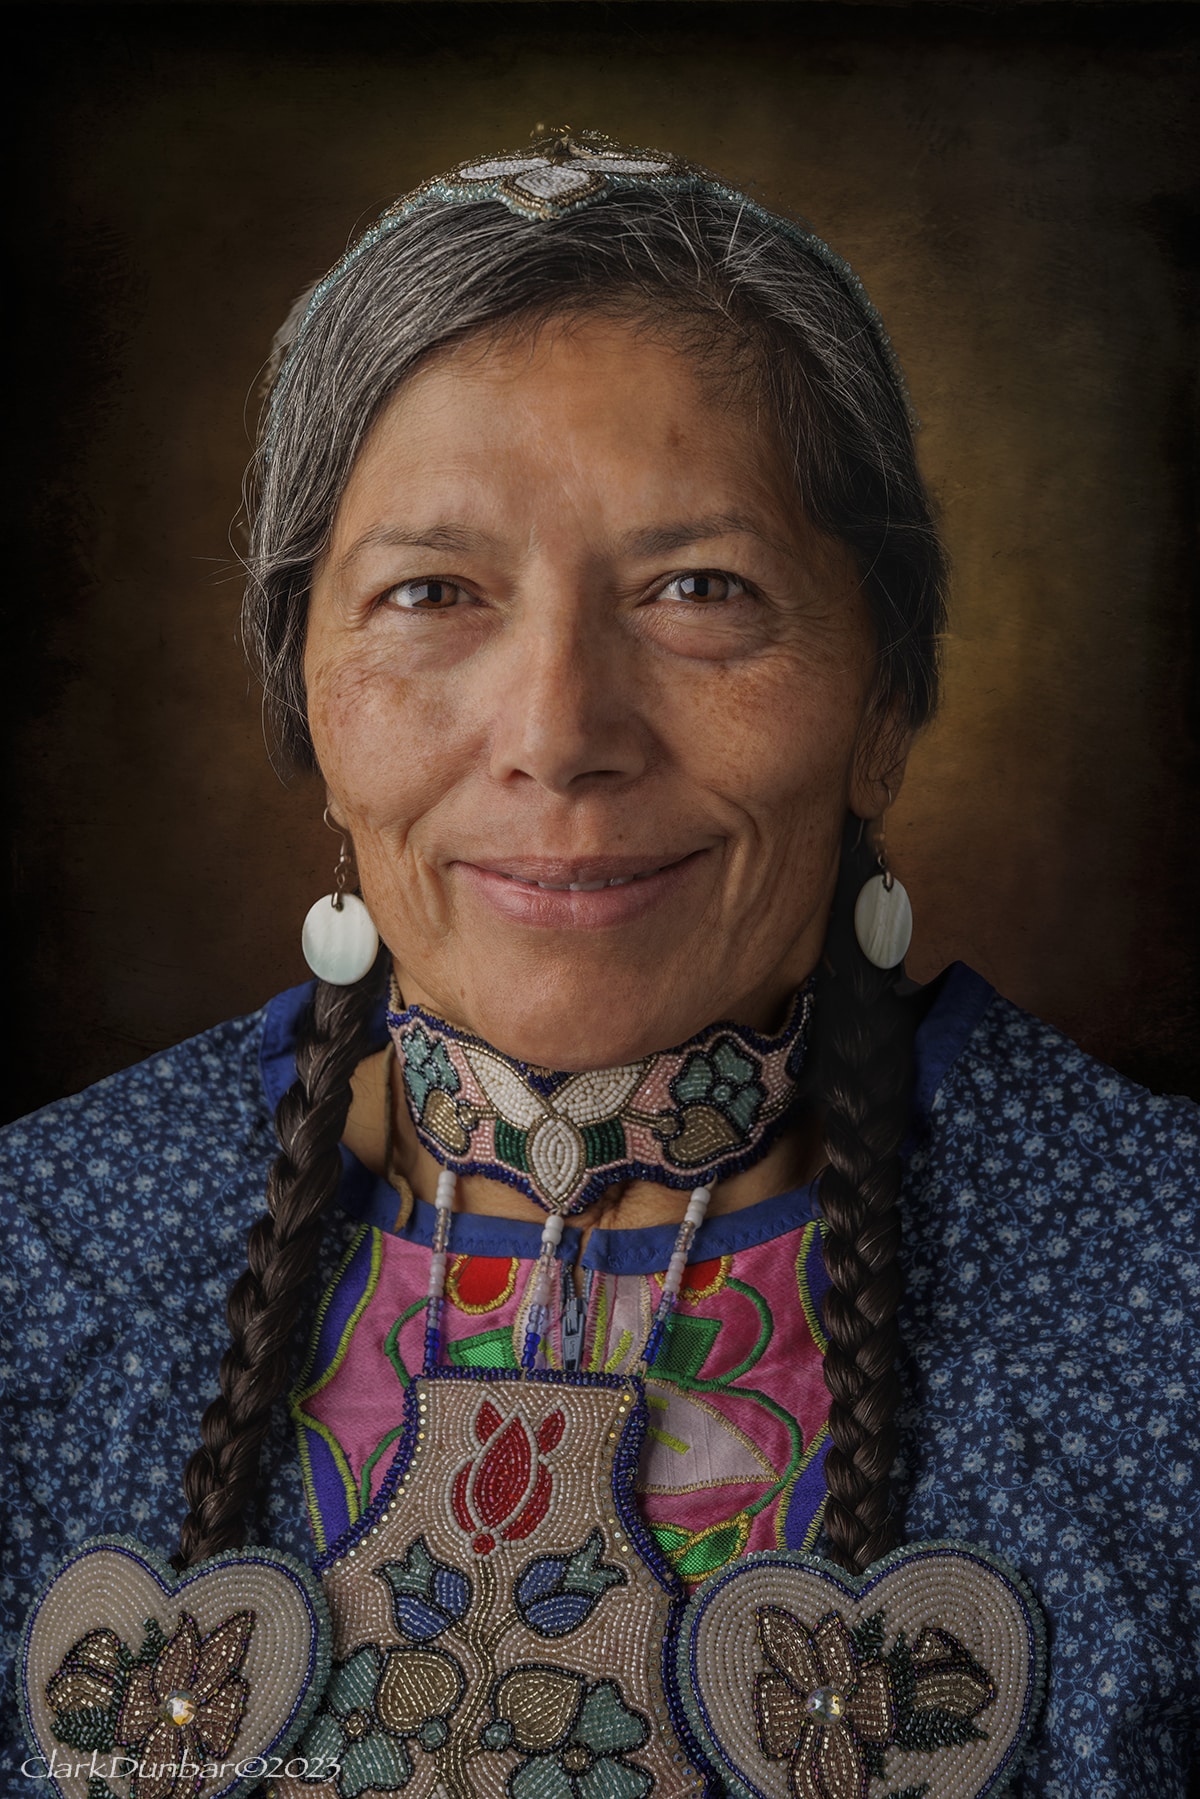 Clark Dunbar Native American Portraits